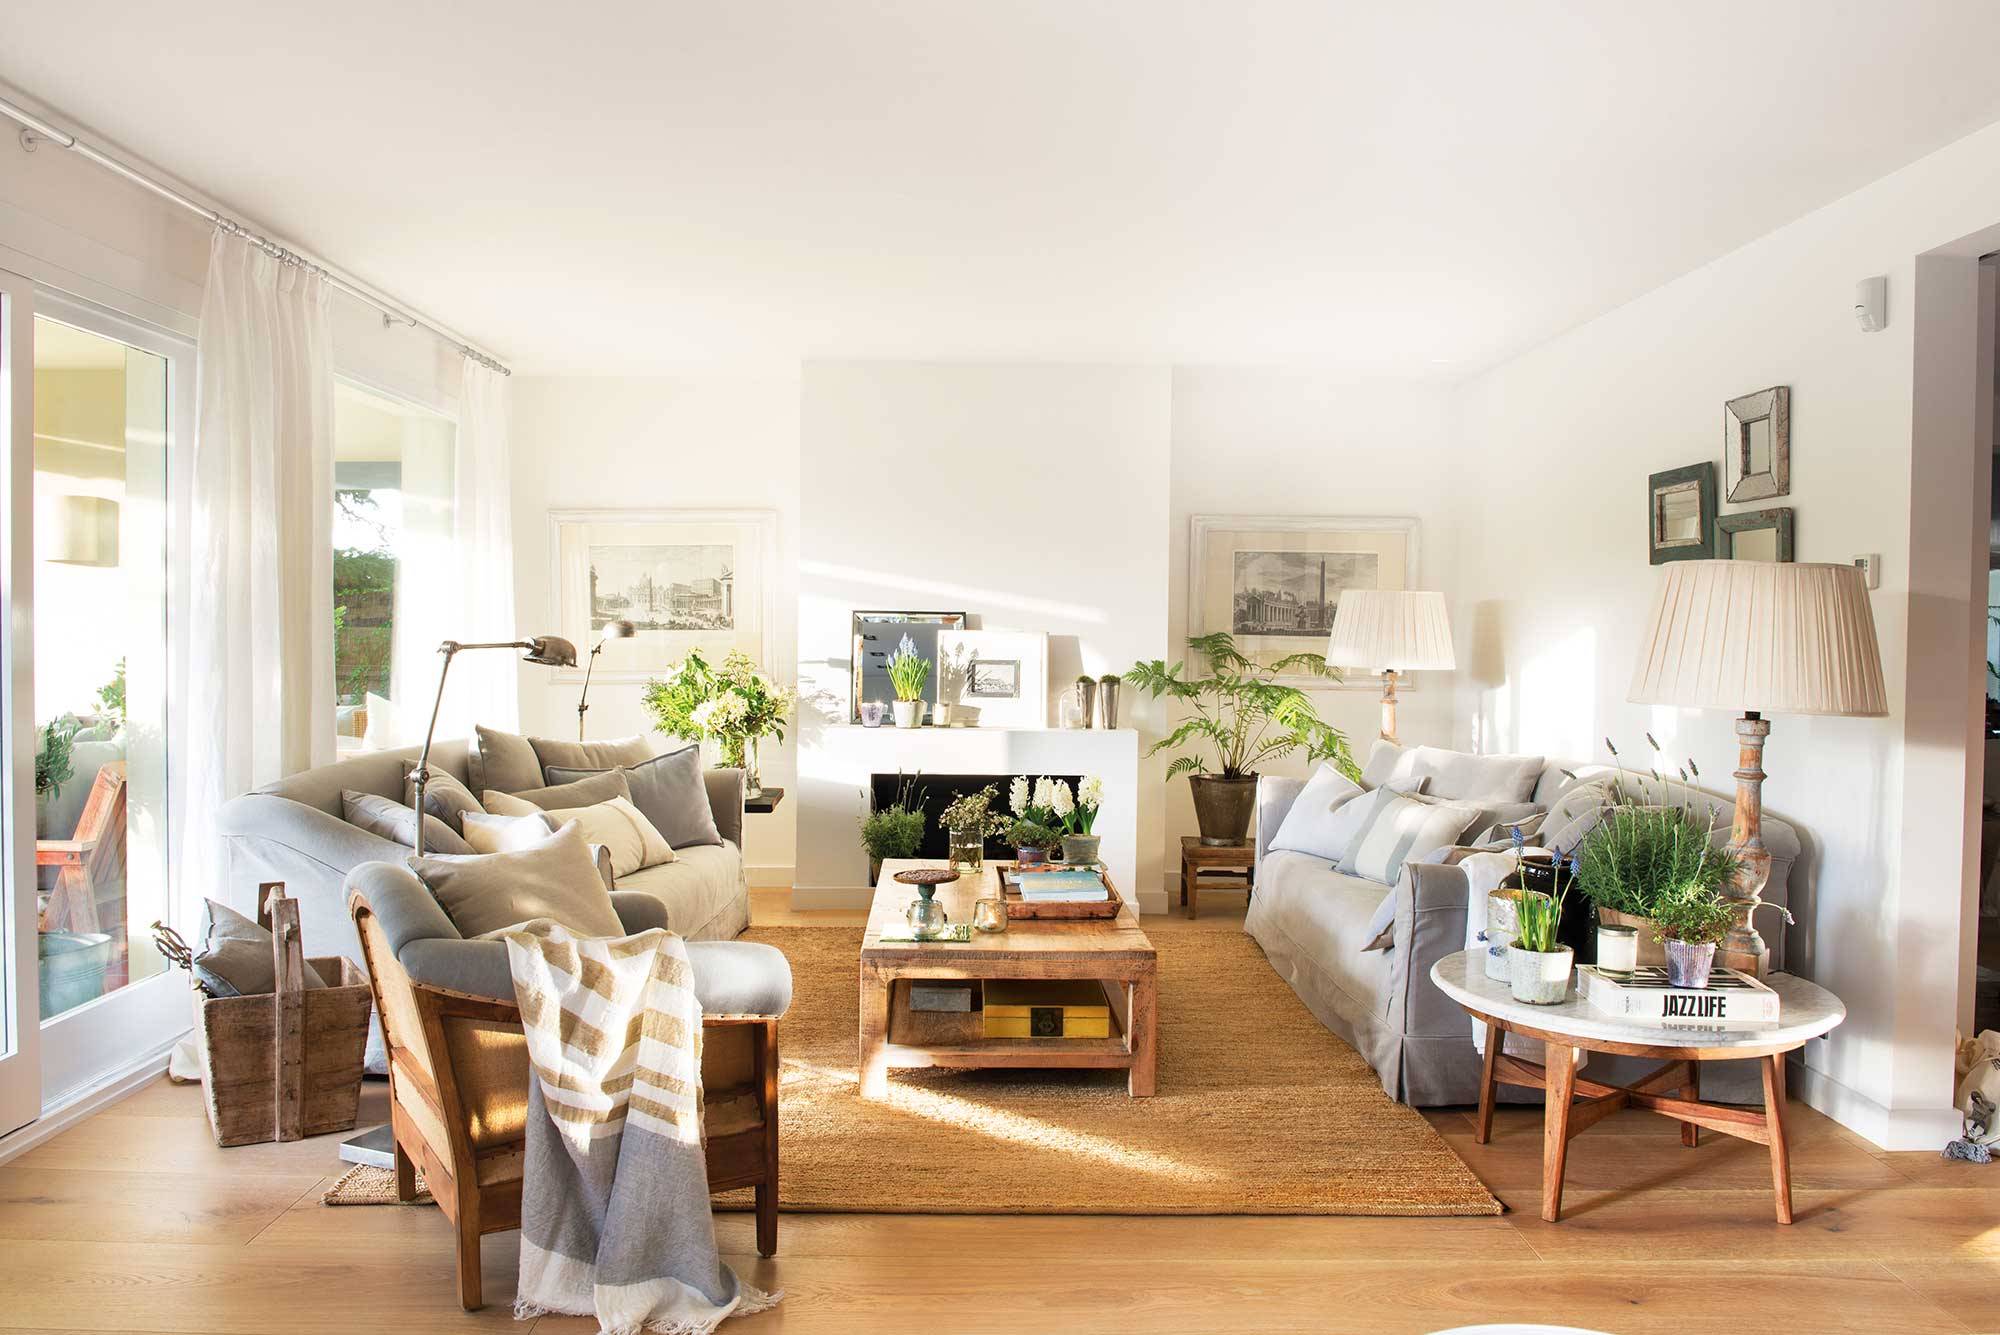 Salón con sofás grises, paredes blancas, accesorios de fibras naturales, chimenea y salida al jardín.